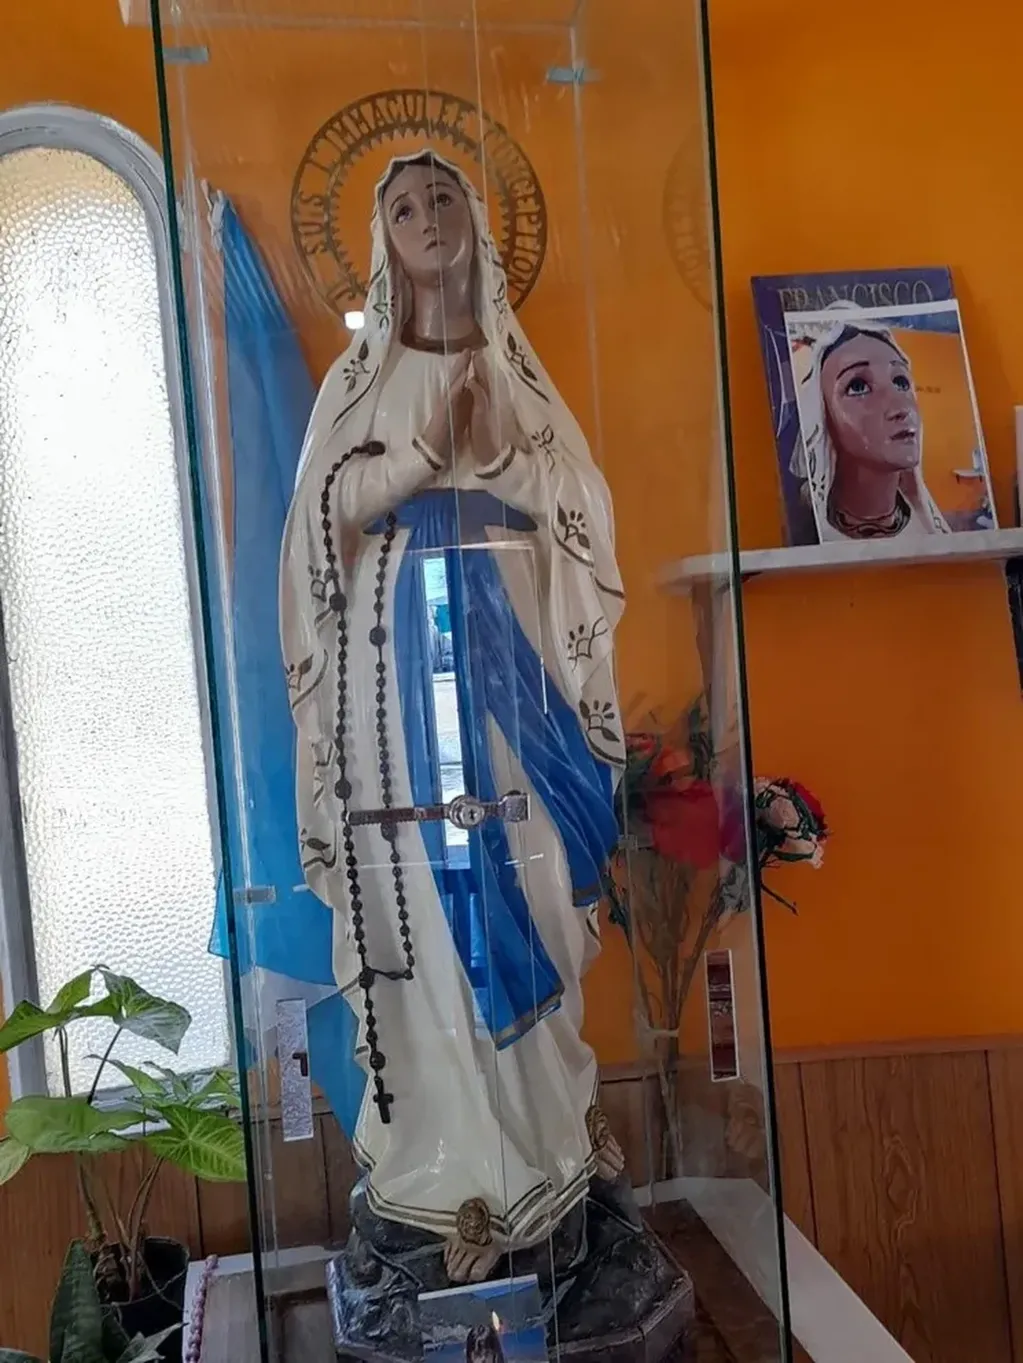 Así se ve la vírgen de 1.20 metros exhibida en la capilla de Vinará, Santiago del Estero. Foto: web